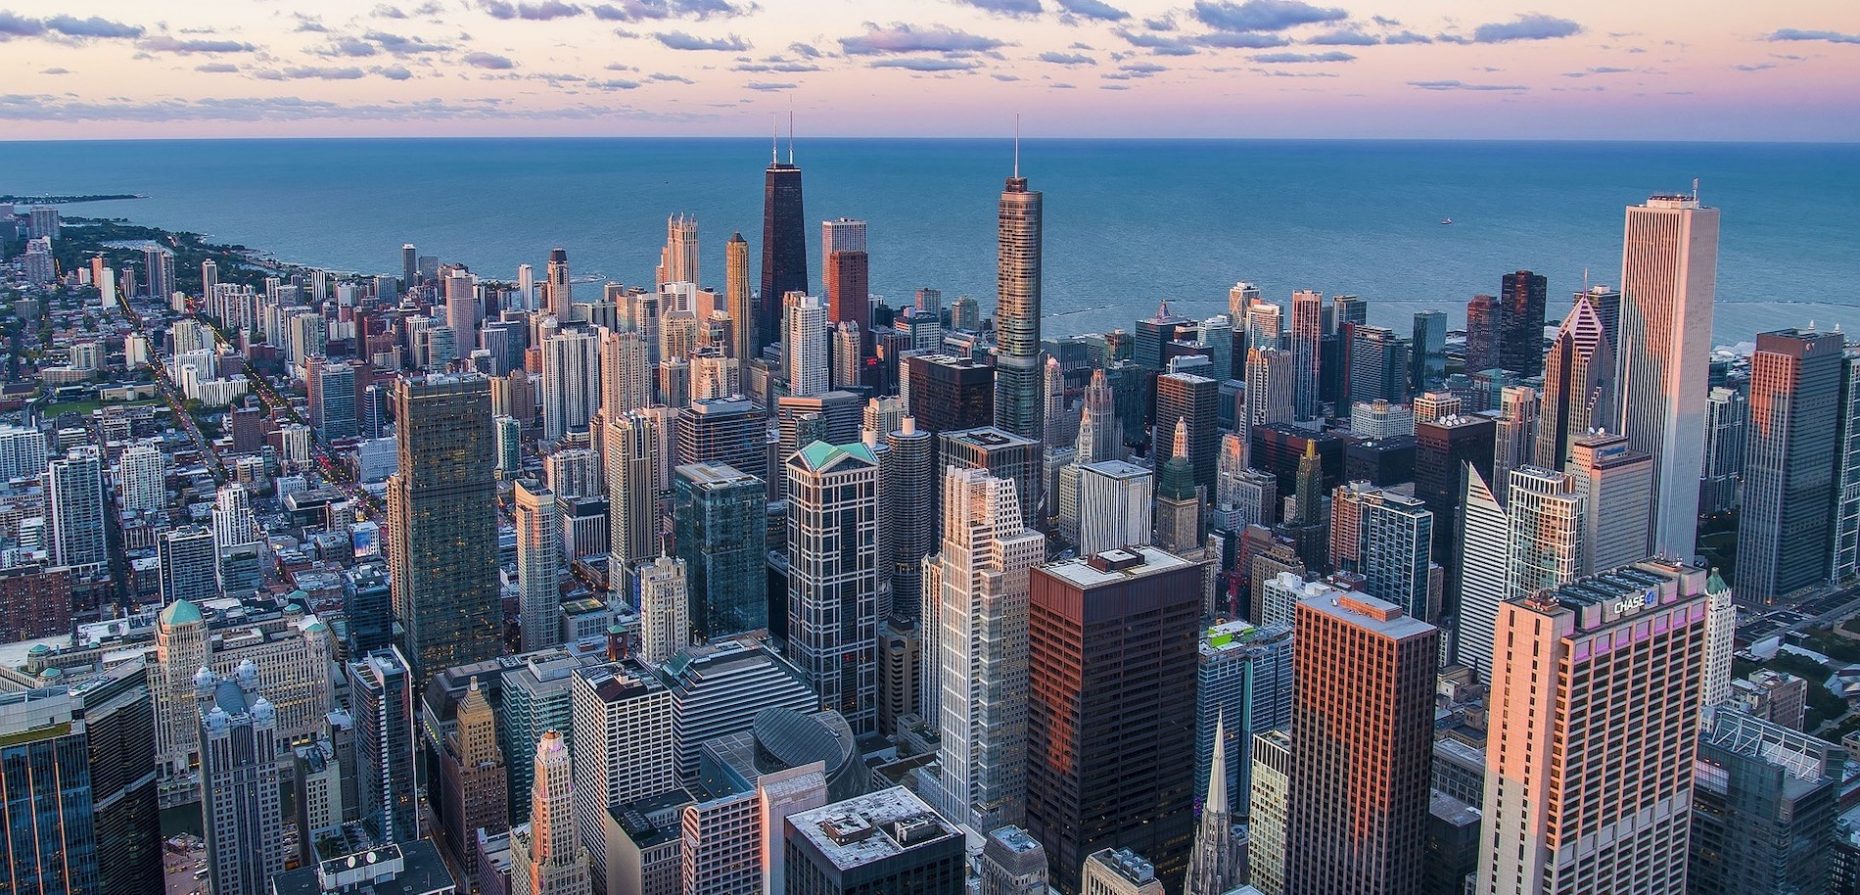 Seit 2015 lädt die drittgrößte Stadt der USA alle zwei Jahre jeweils im September zur Chicago Architecture Biennial. Warum aber sollte man statt nach New York hierher reisen? COLD PERFECTION klärt auf.